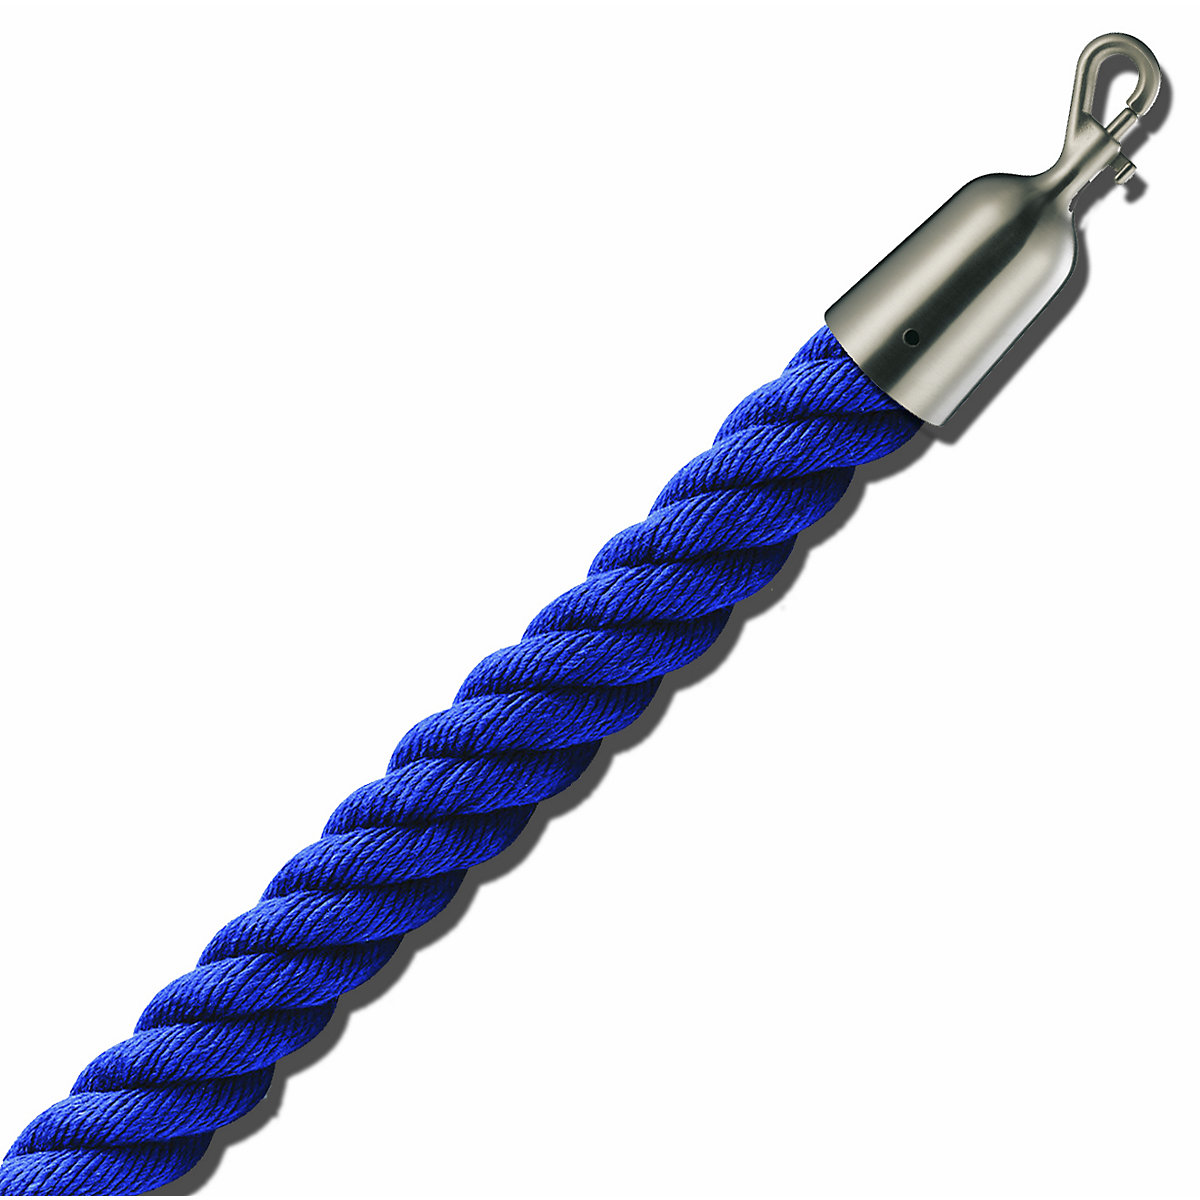 Cordel delimitador de 1,5 m, extremos niquelados mate, cordel azul-6